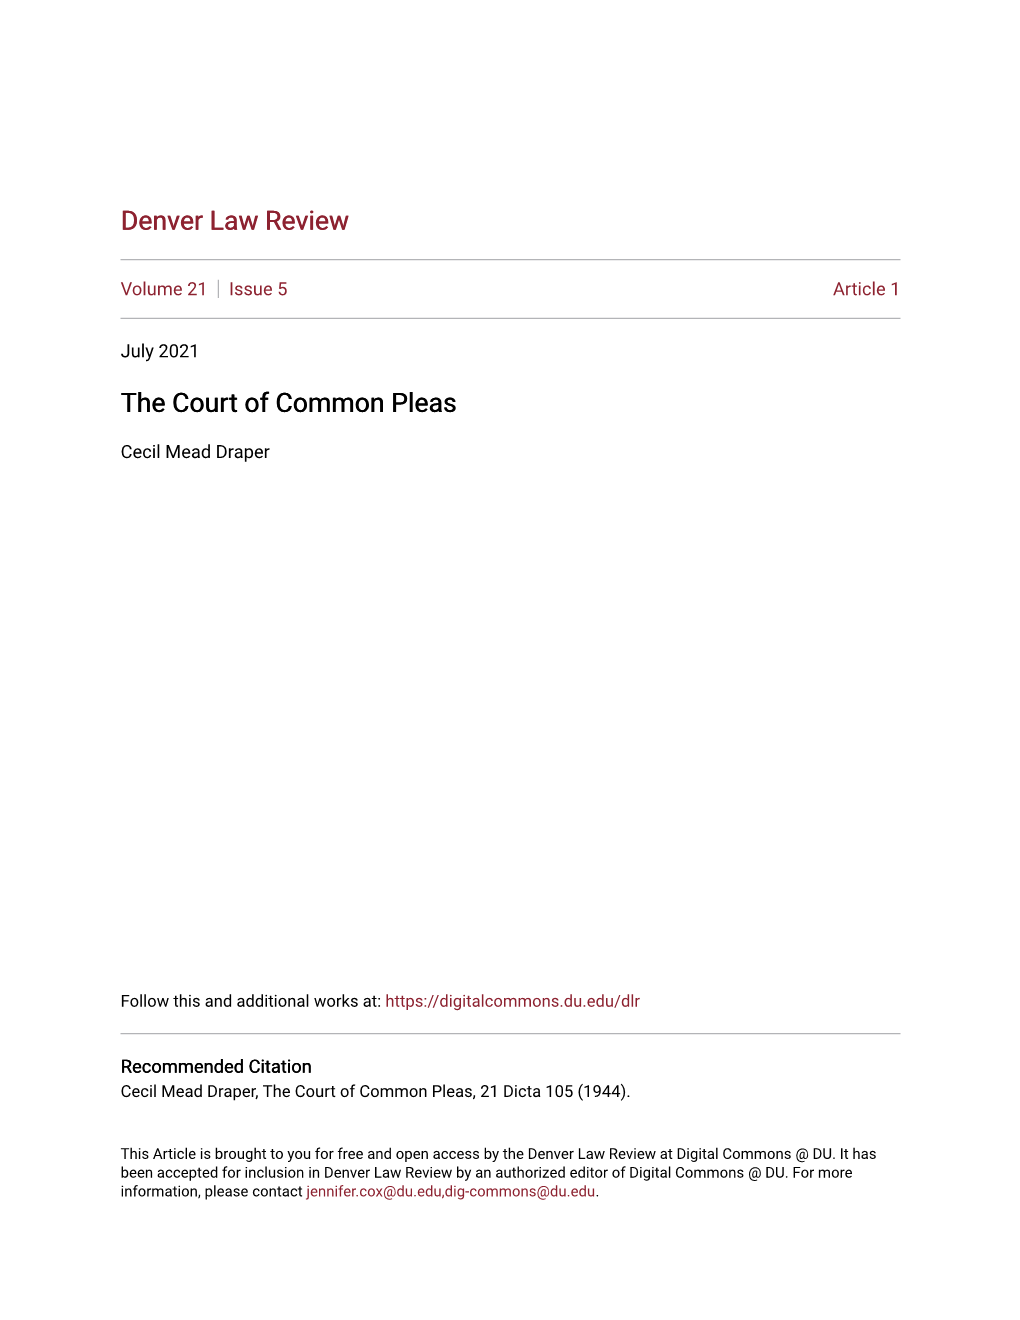 The Court of Common Pleas